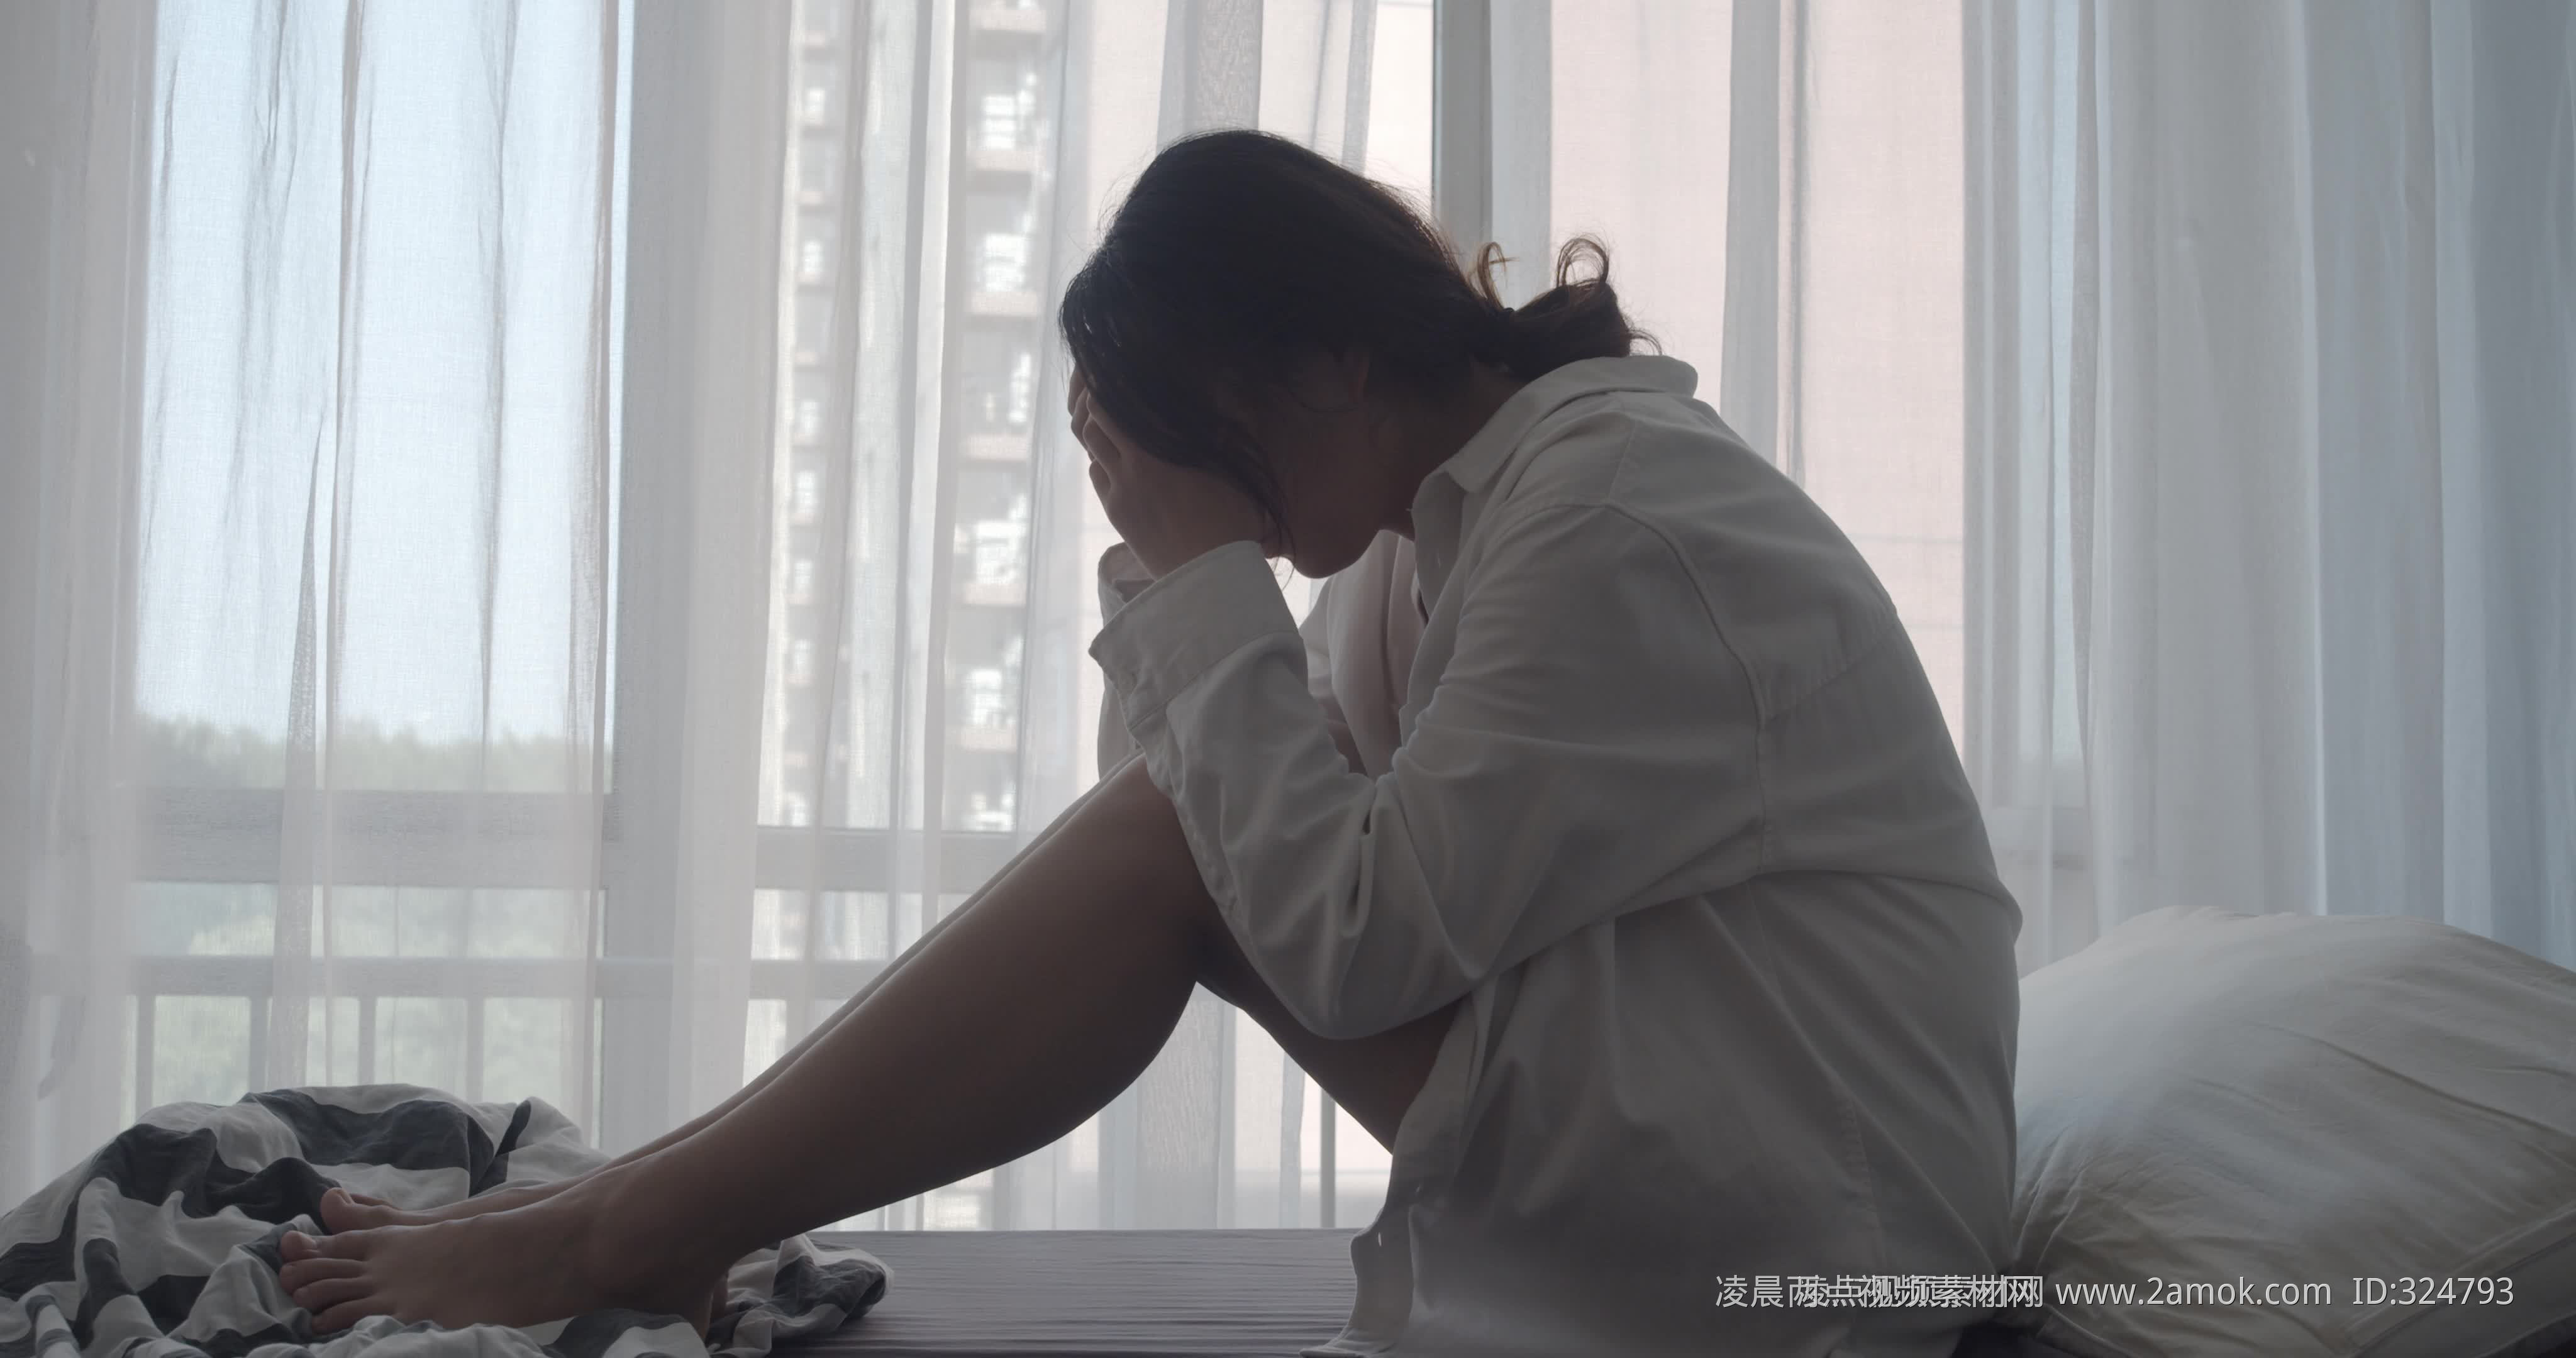 【1440x900】伤心的女生桌面壁纸 - 彼岸桌面